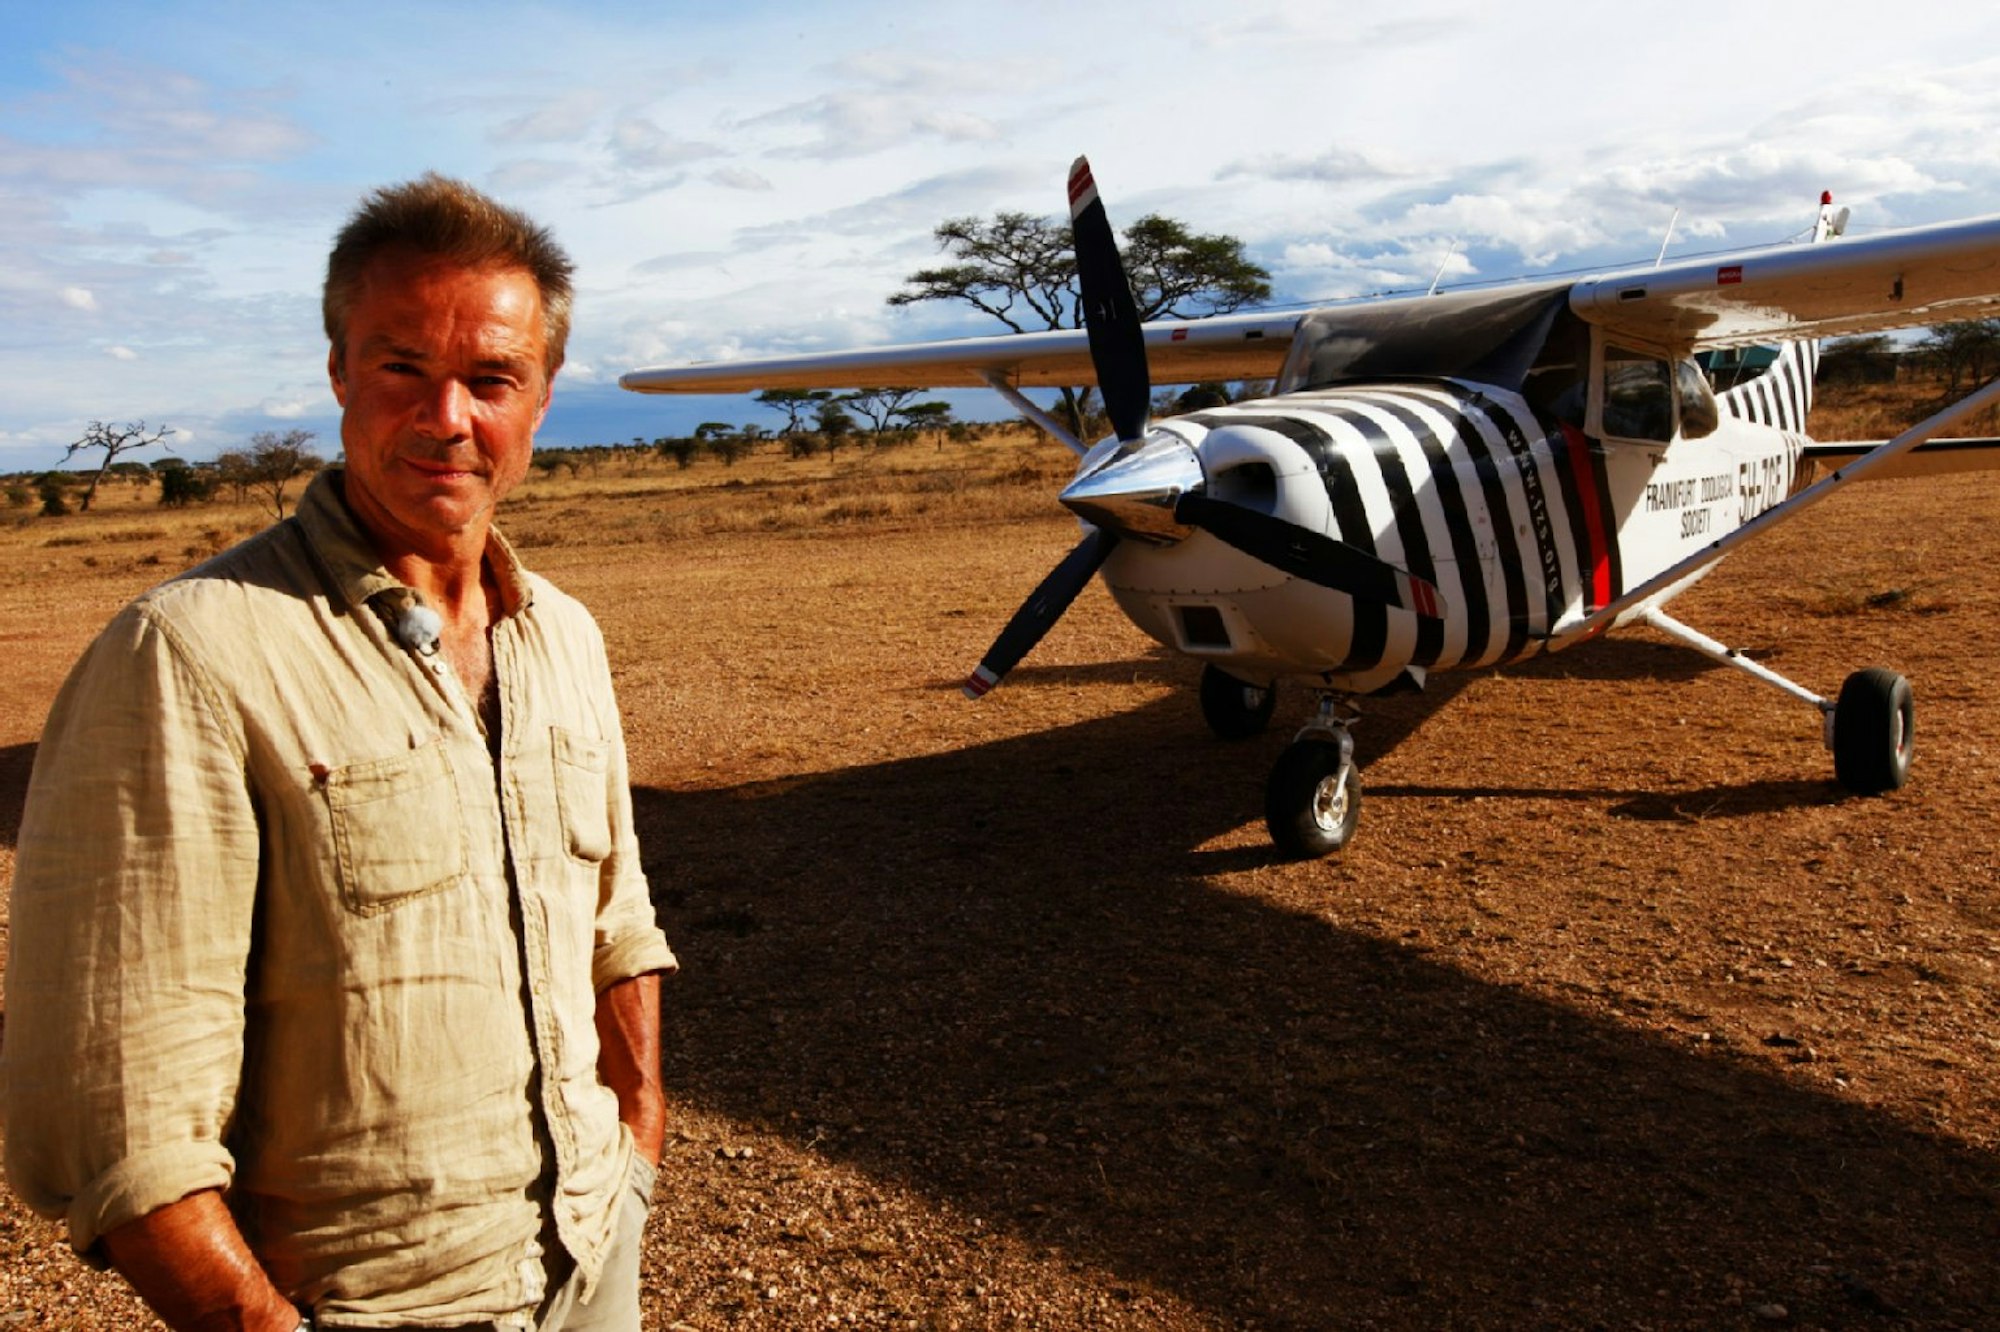 Jaenicke steht vor dem berühmten „geflügelten Zebra“ – dem Flugzeug von Bernhard Grzimek.